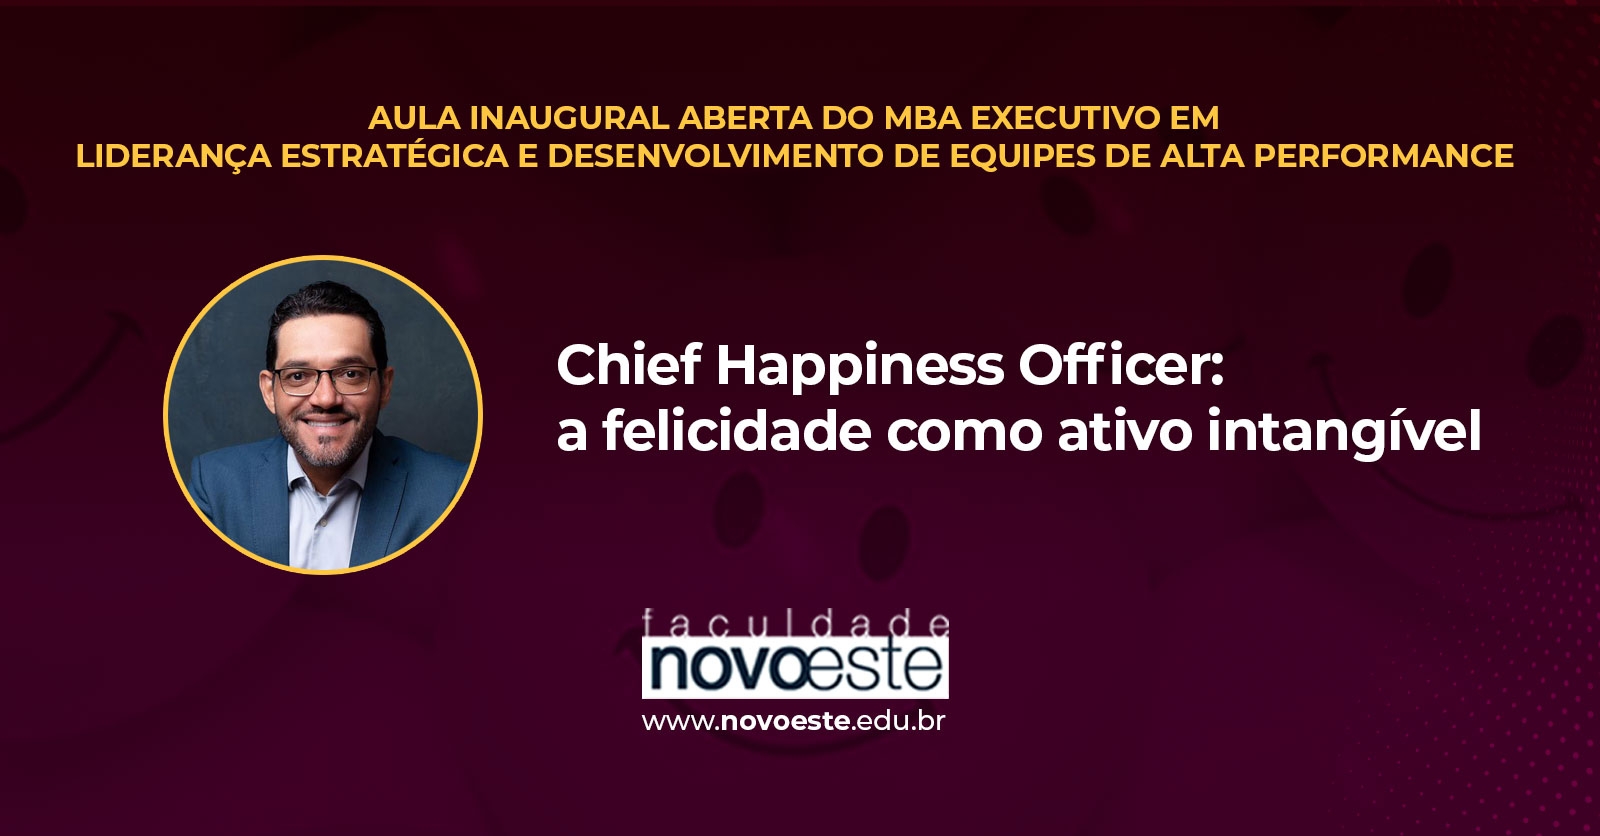 Chief Happiness Officer: a felicidade como ativo intangível